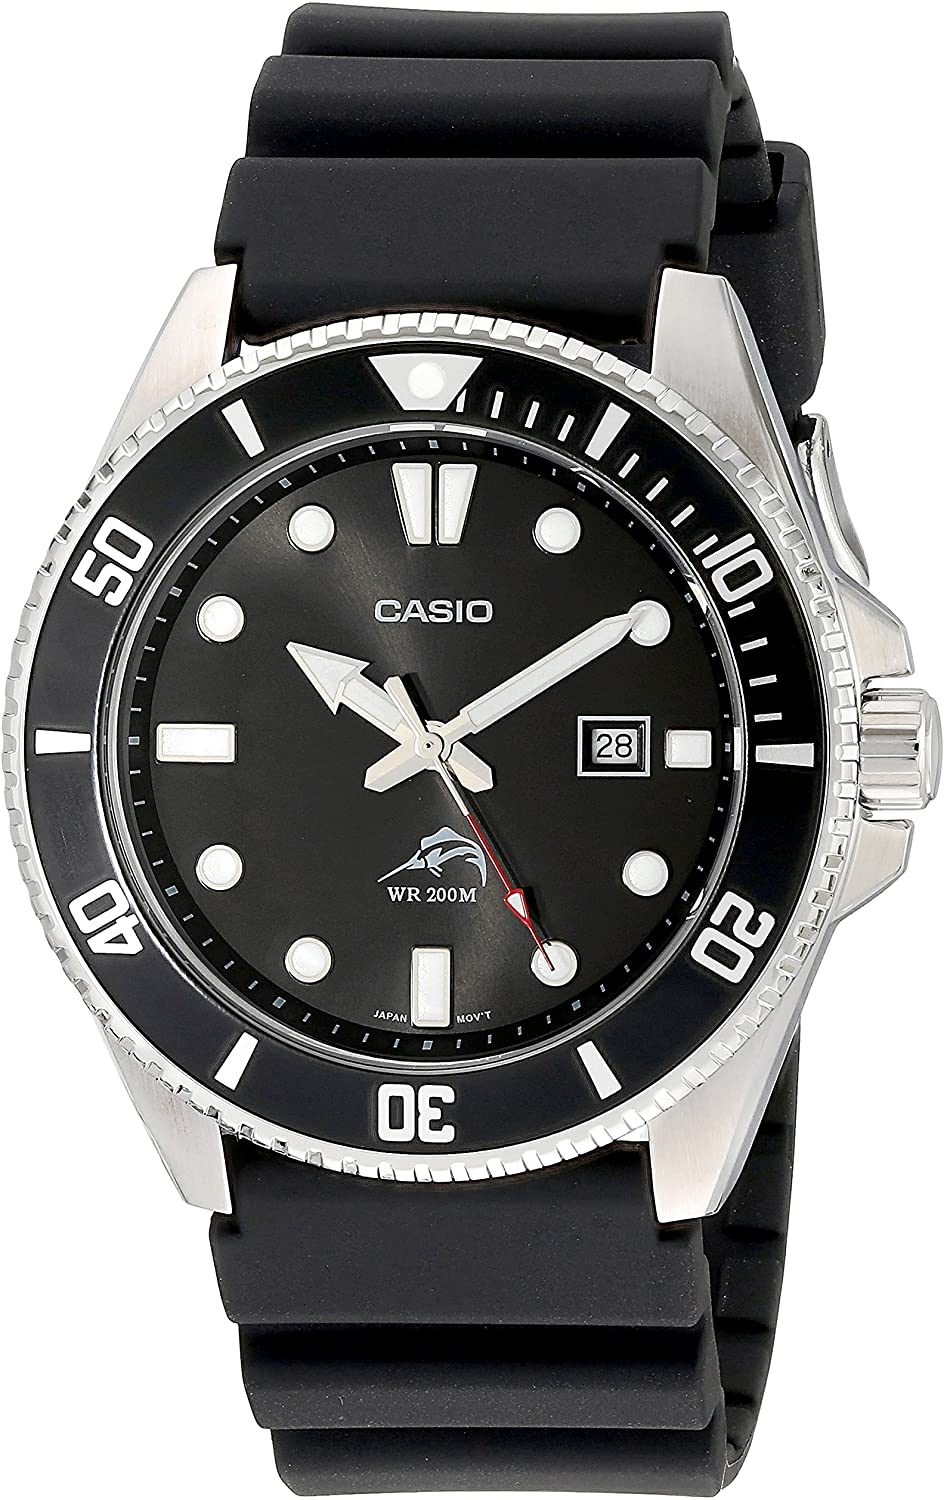 5 relojes para el mar Casio Marlin 